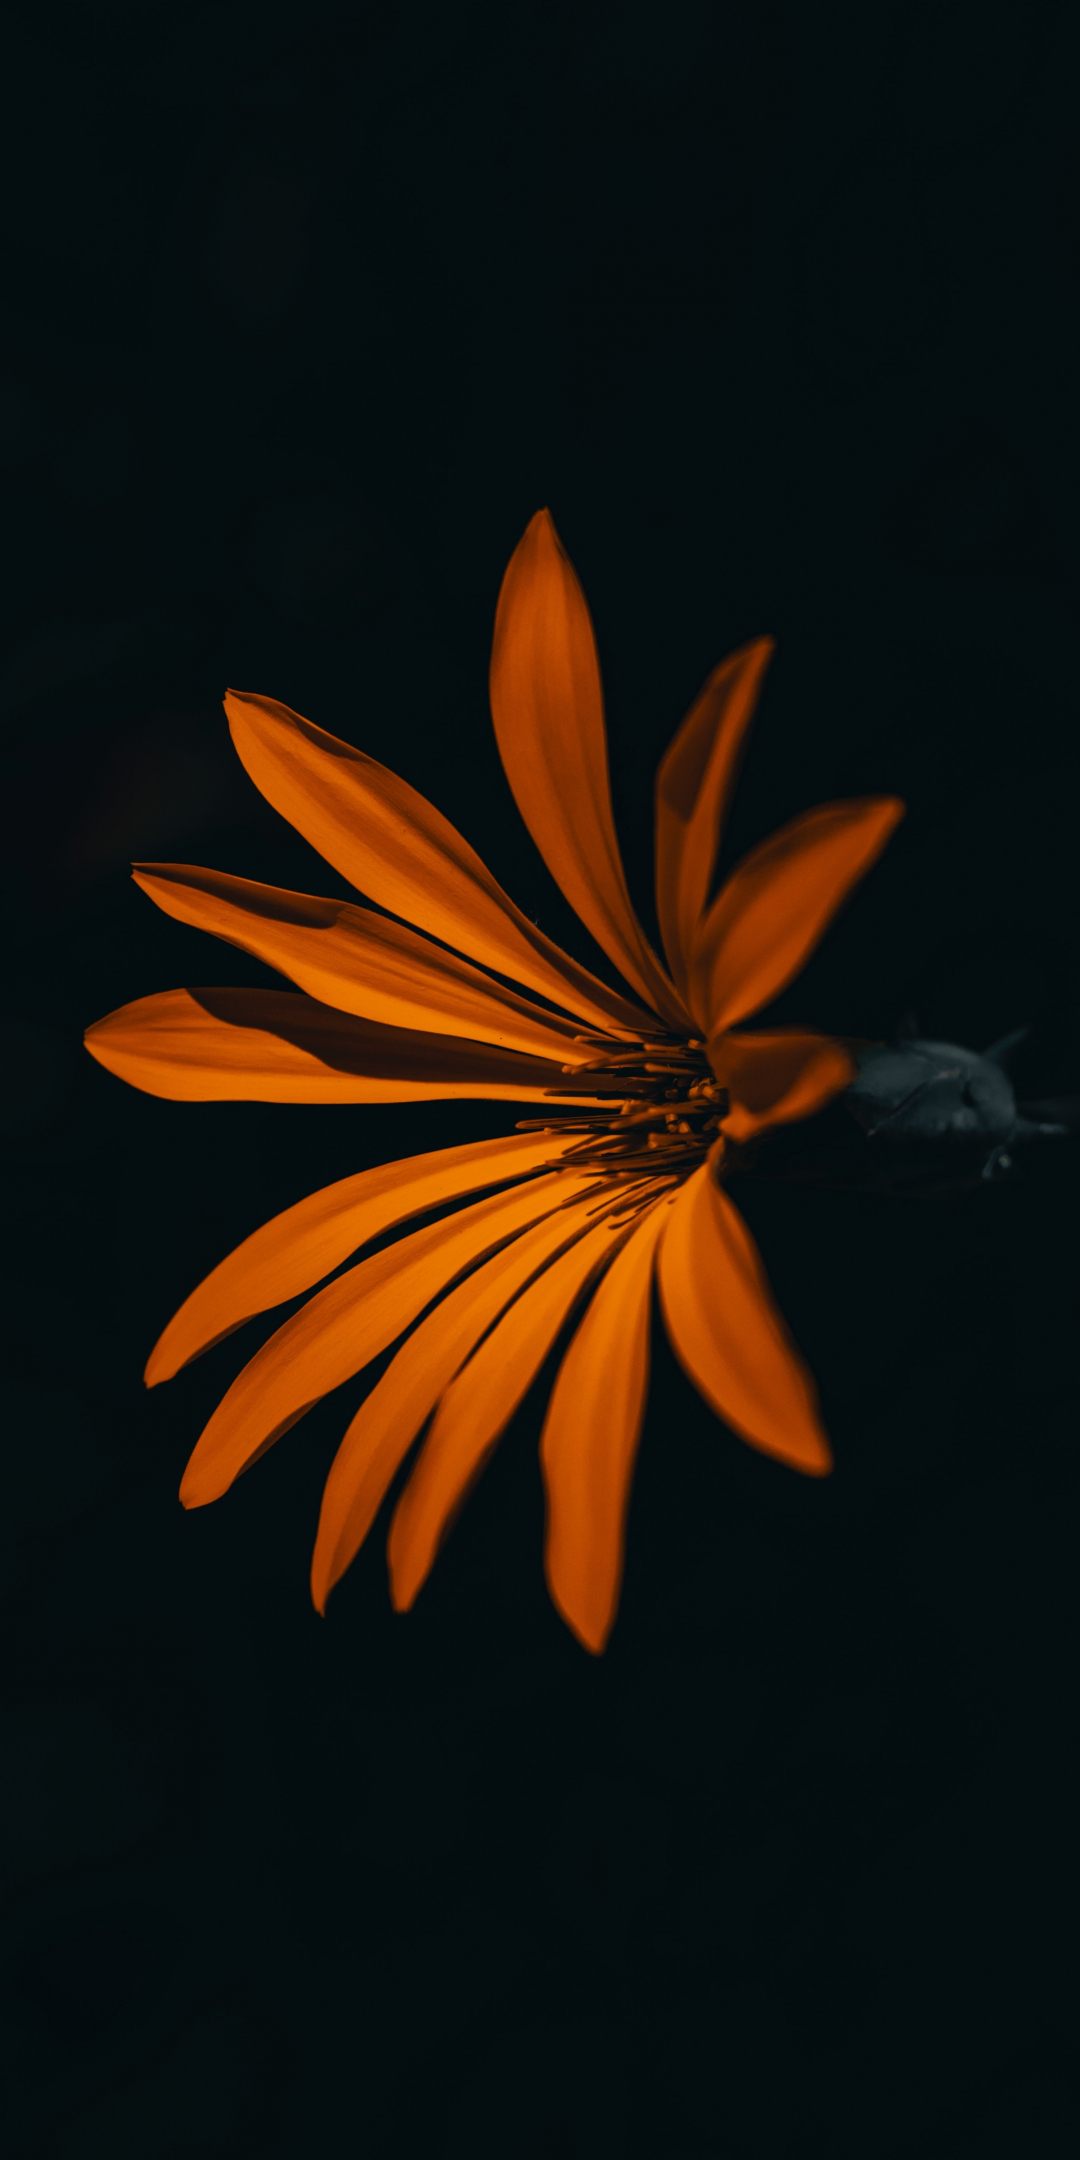 Flower, orange, dark, 1080x2160 wallpaper